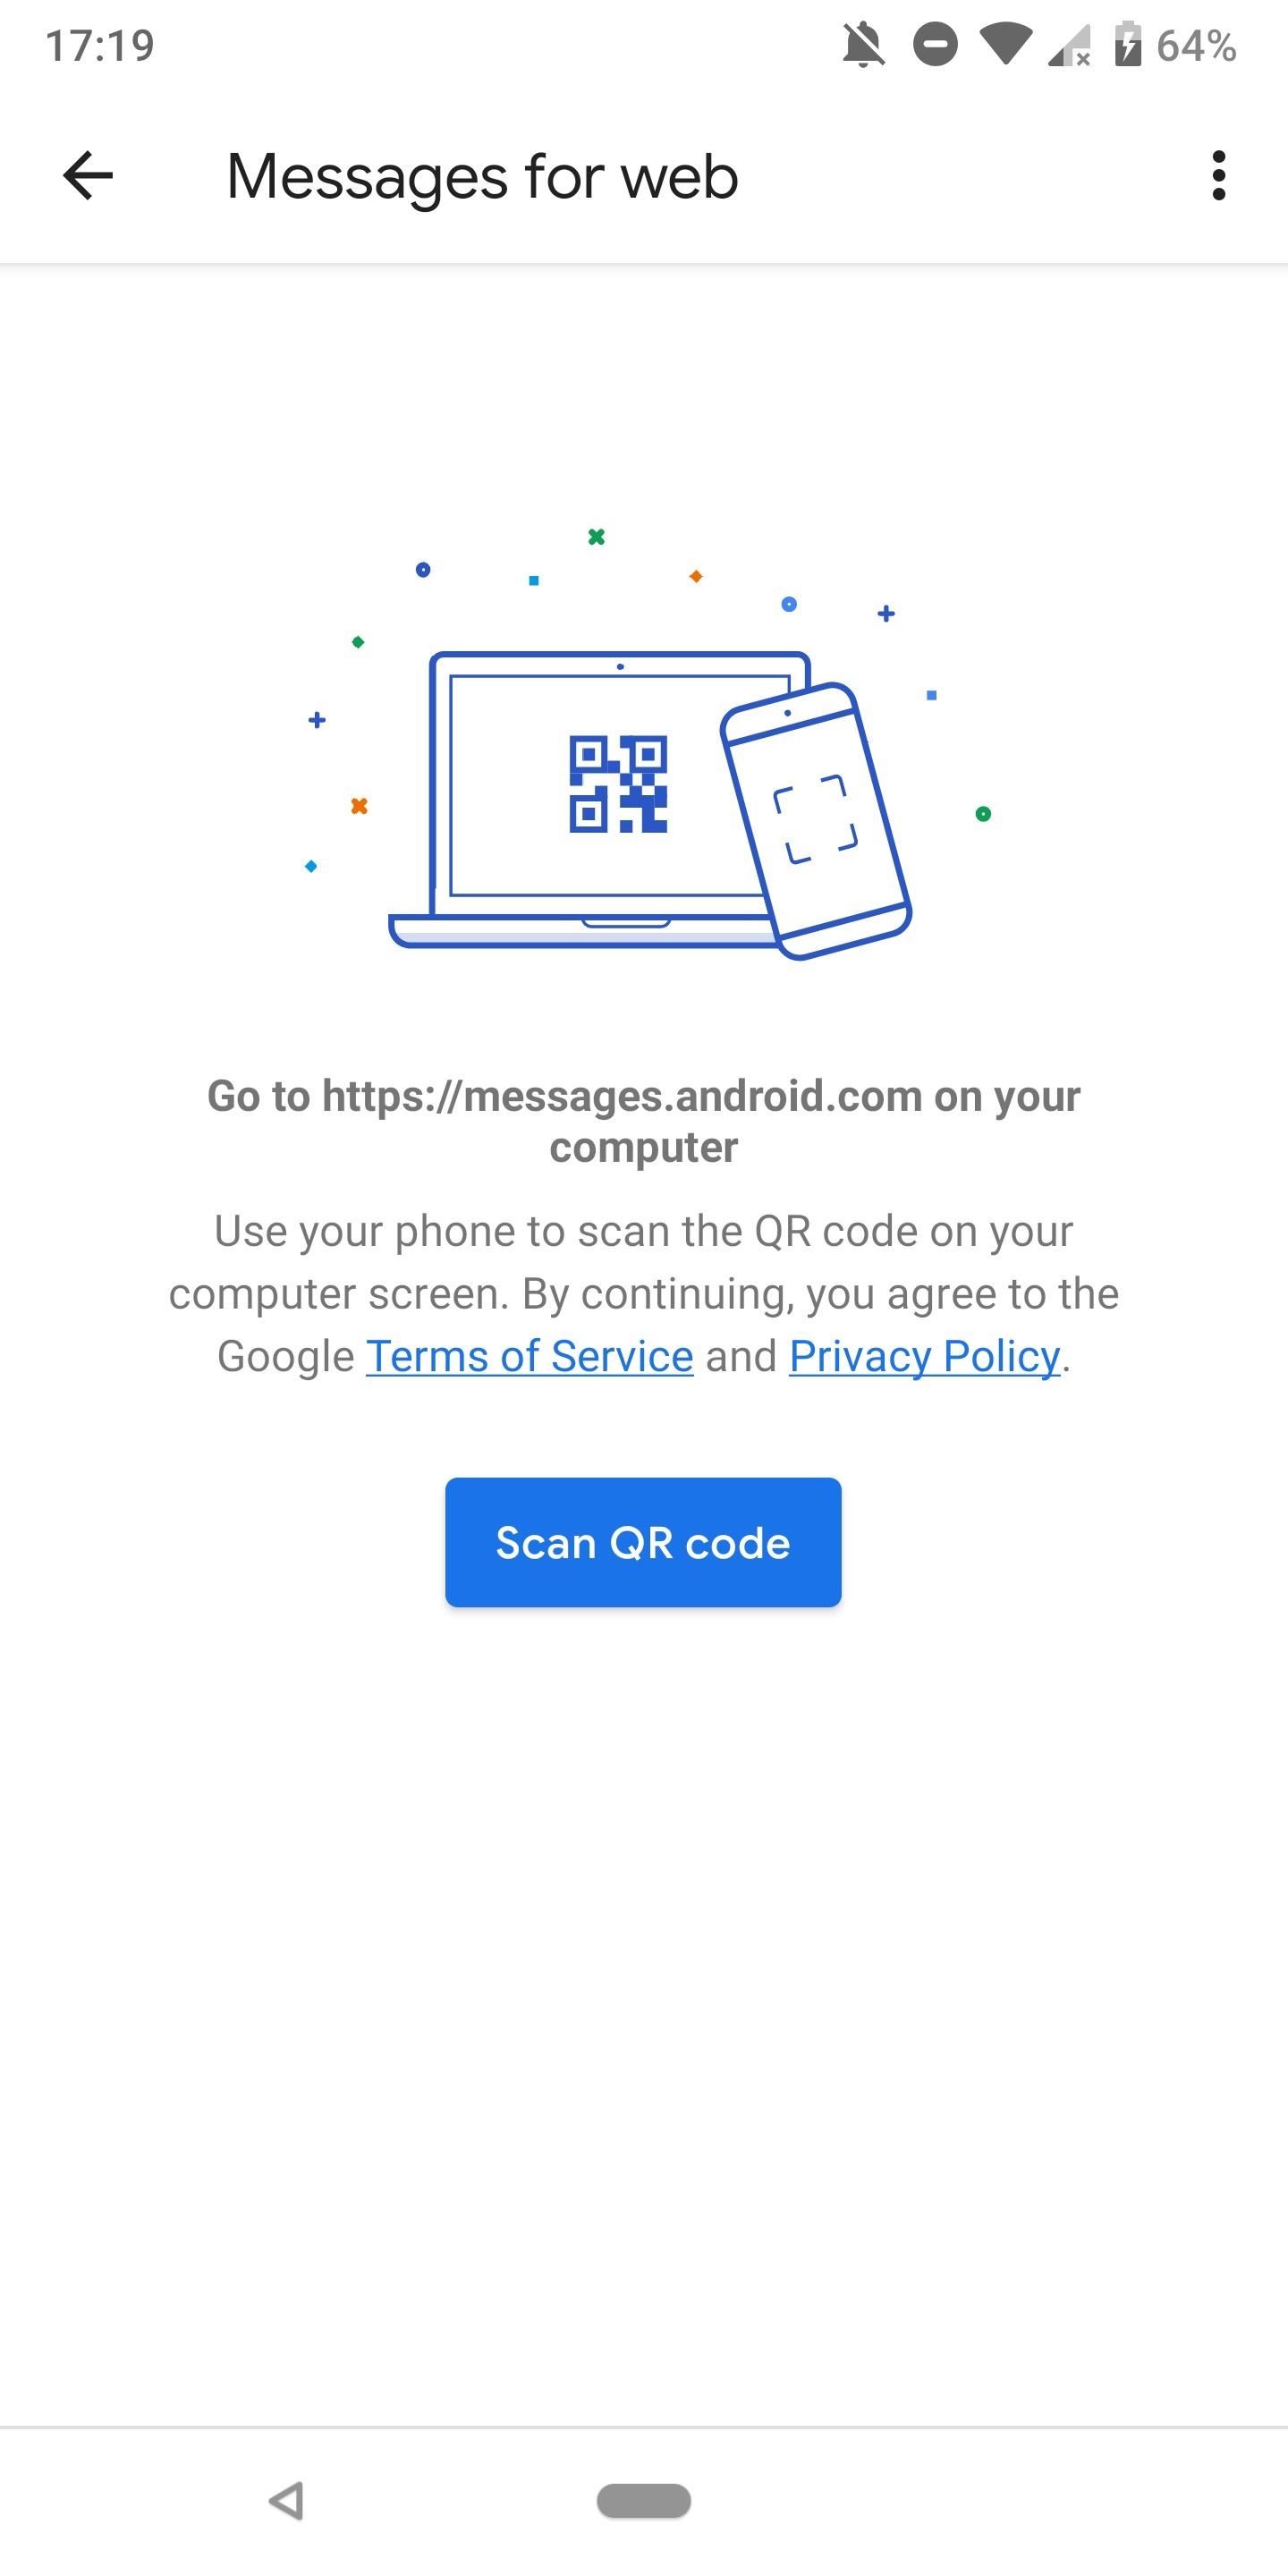 Kirim dan terima teks dari komputer mana pun dengan pesan Android